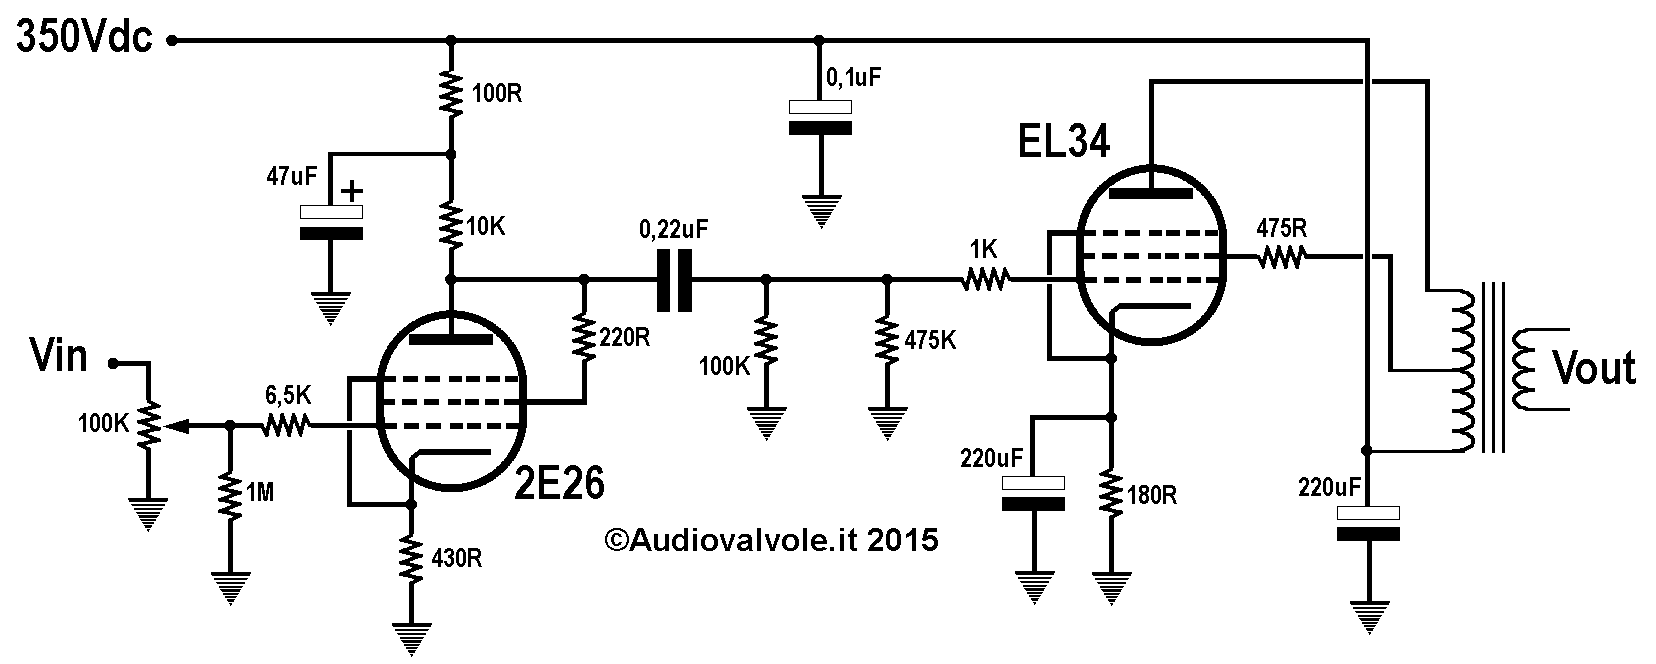 Schema Amplificatore di potenza ultralineare in configurazione single-ended